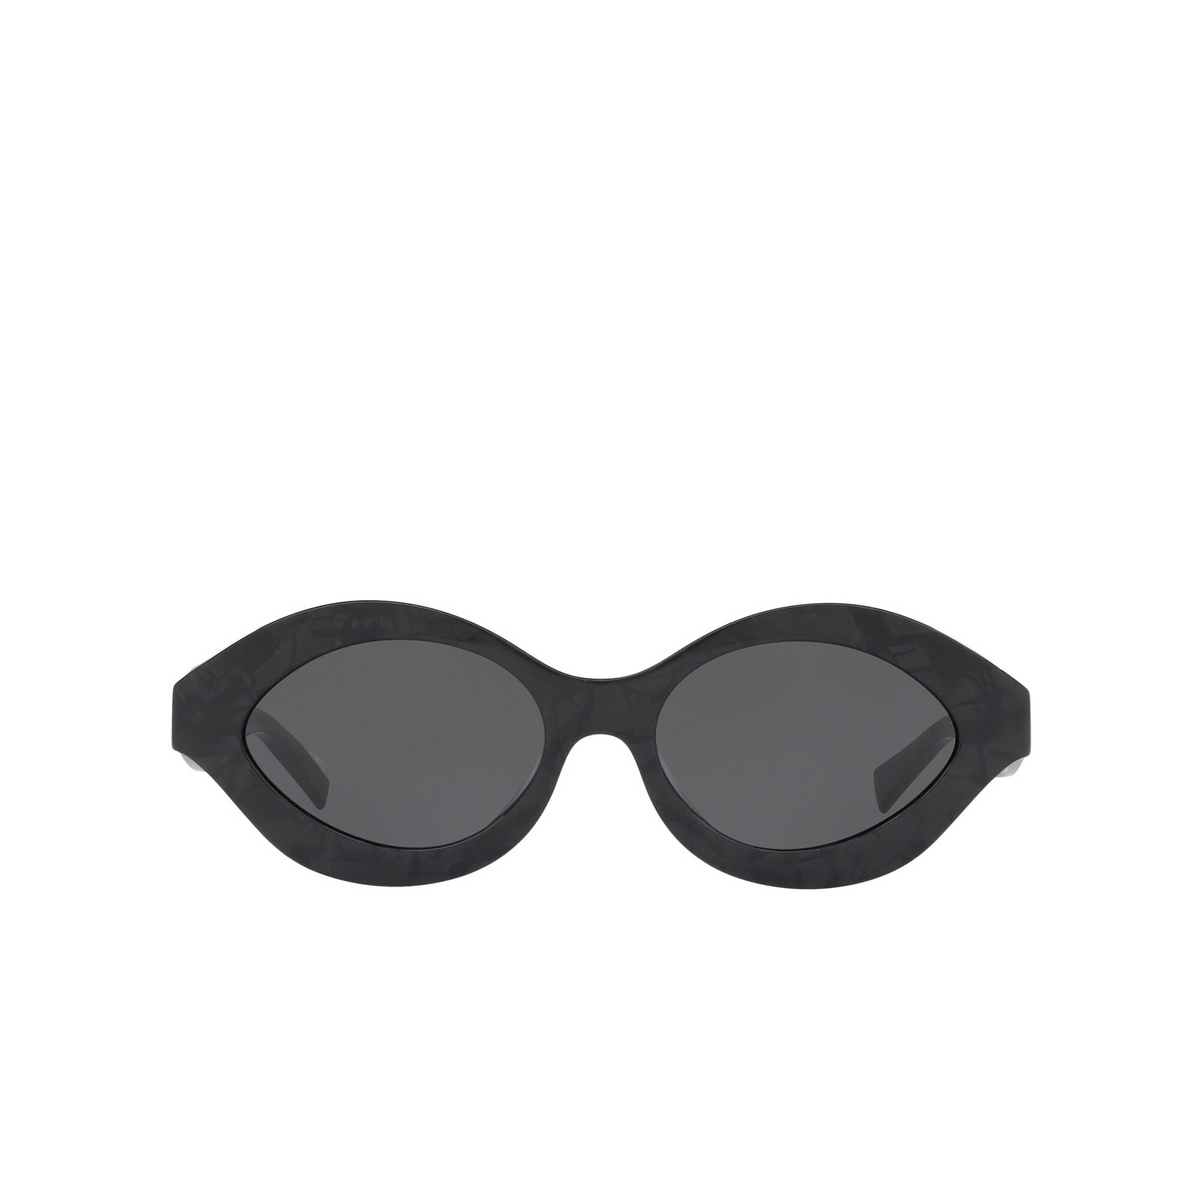 Alain Mikli® Oval Sunglasses: N°862 A05049 color Noir Mikli 003/87 - front view.